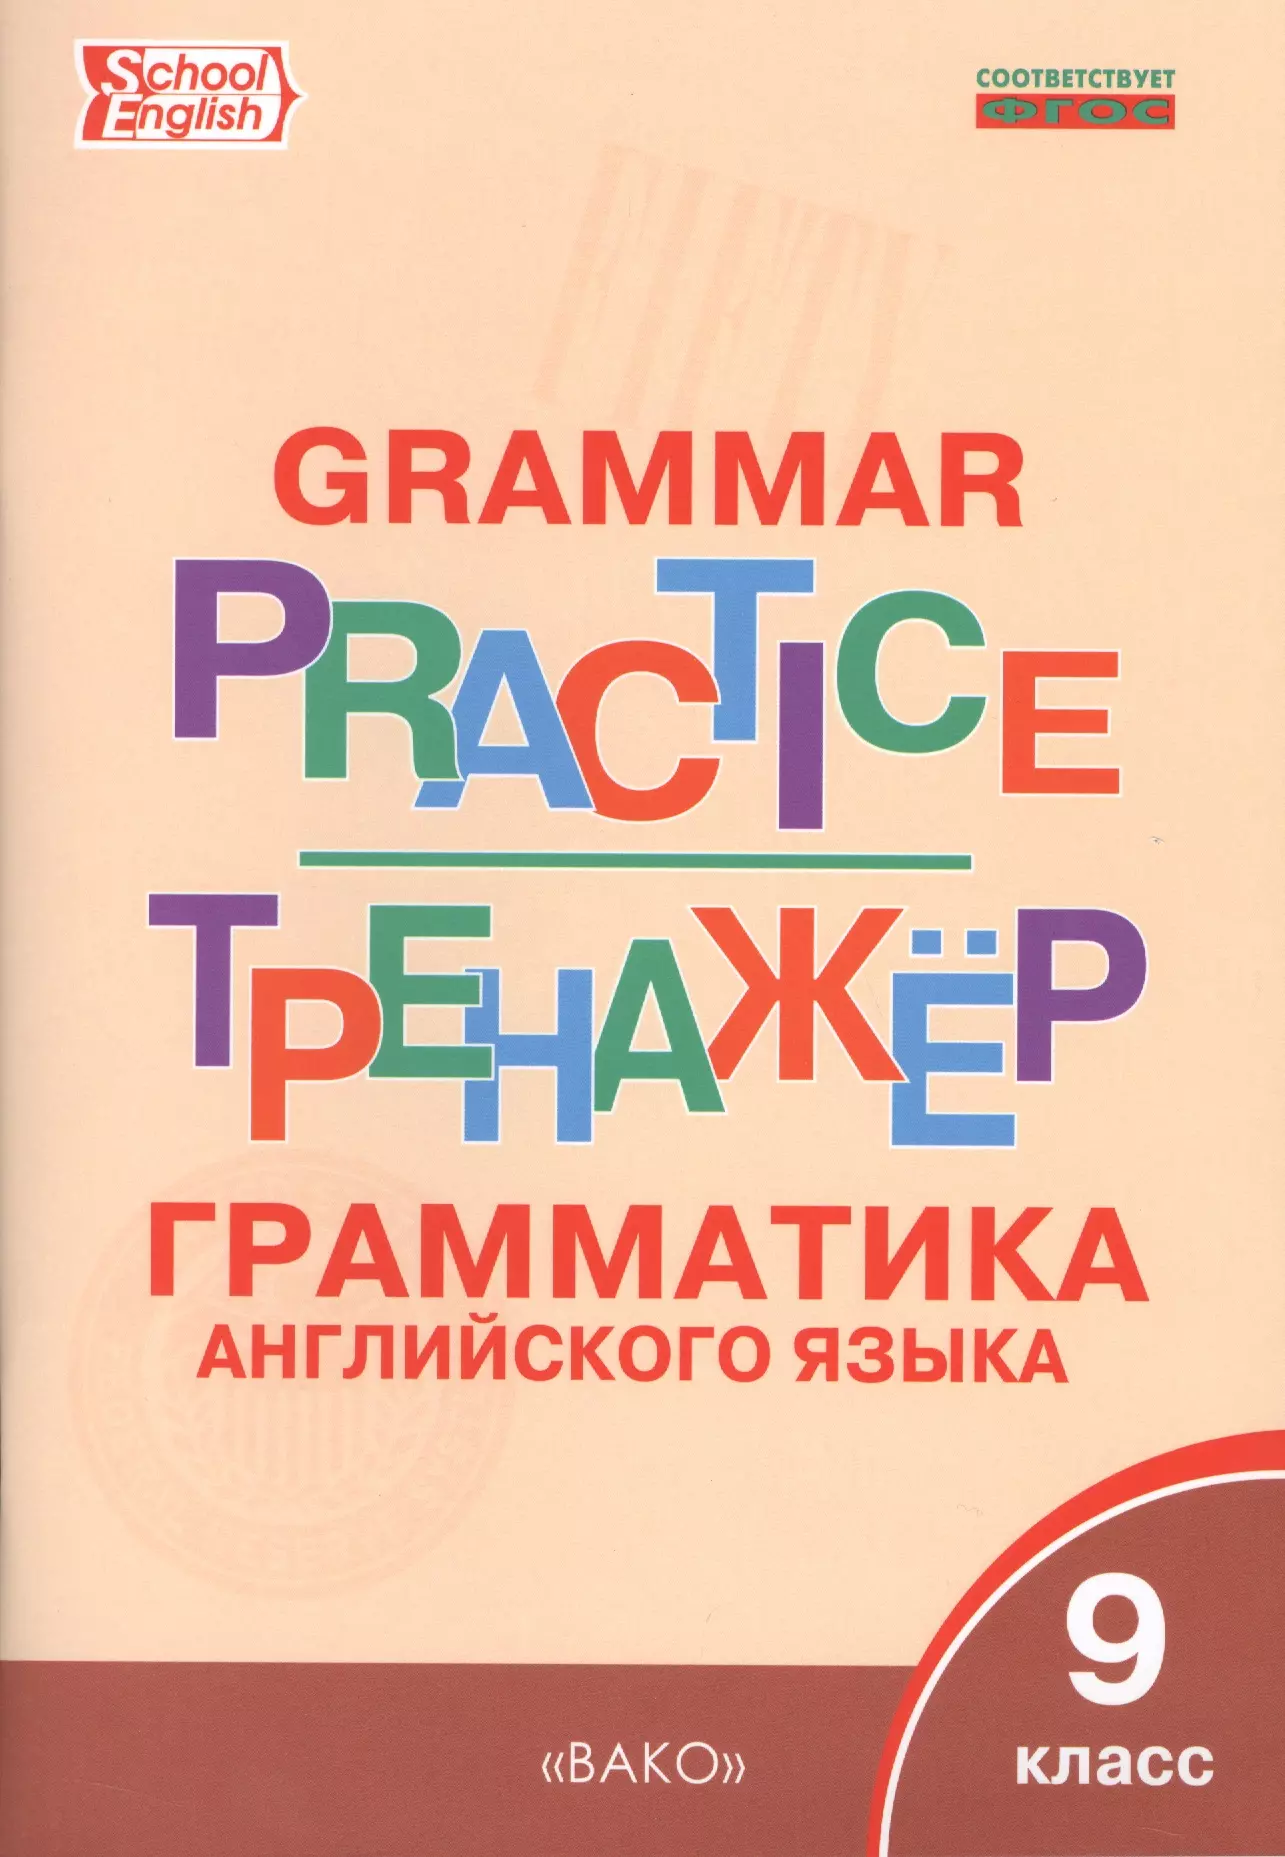 Английский язык: грамматический тренажёр 9 кл. английский язык 9 класс грамматический тренажёр фгос